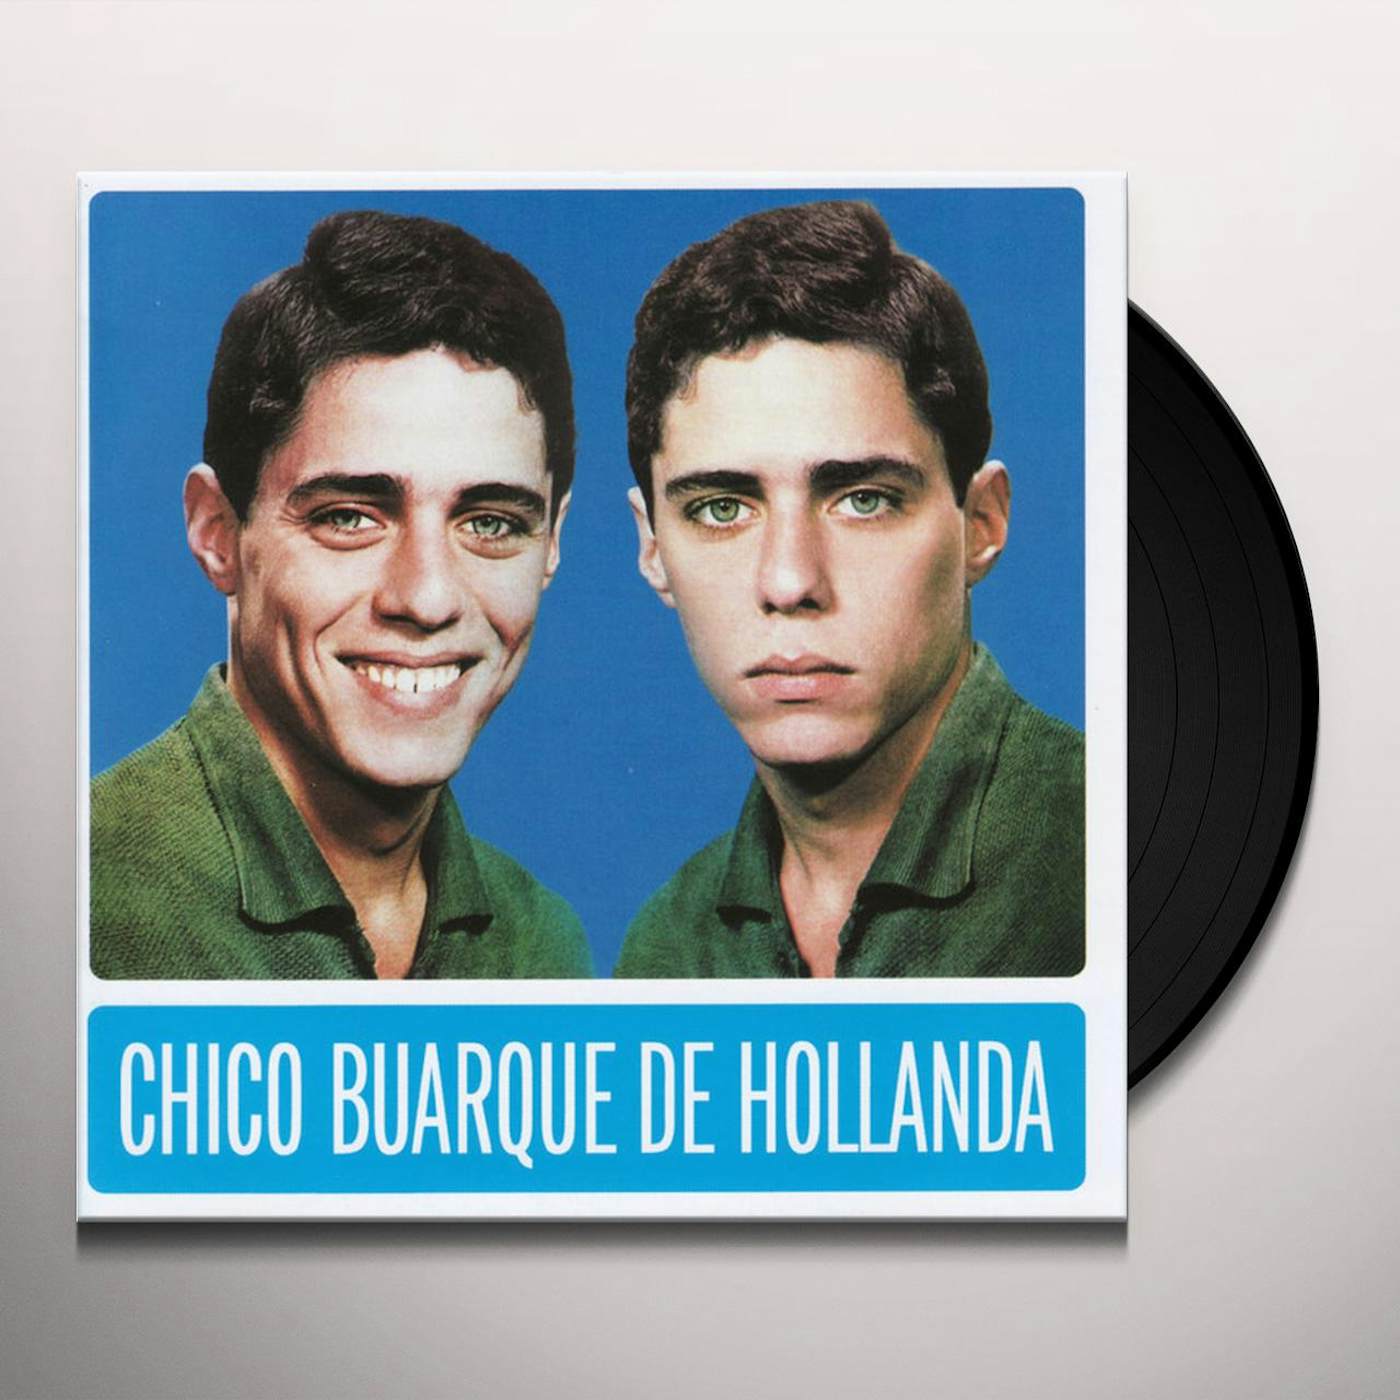 Chico Buarque de Hollanda Vinyl Record